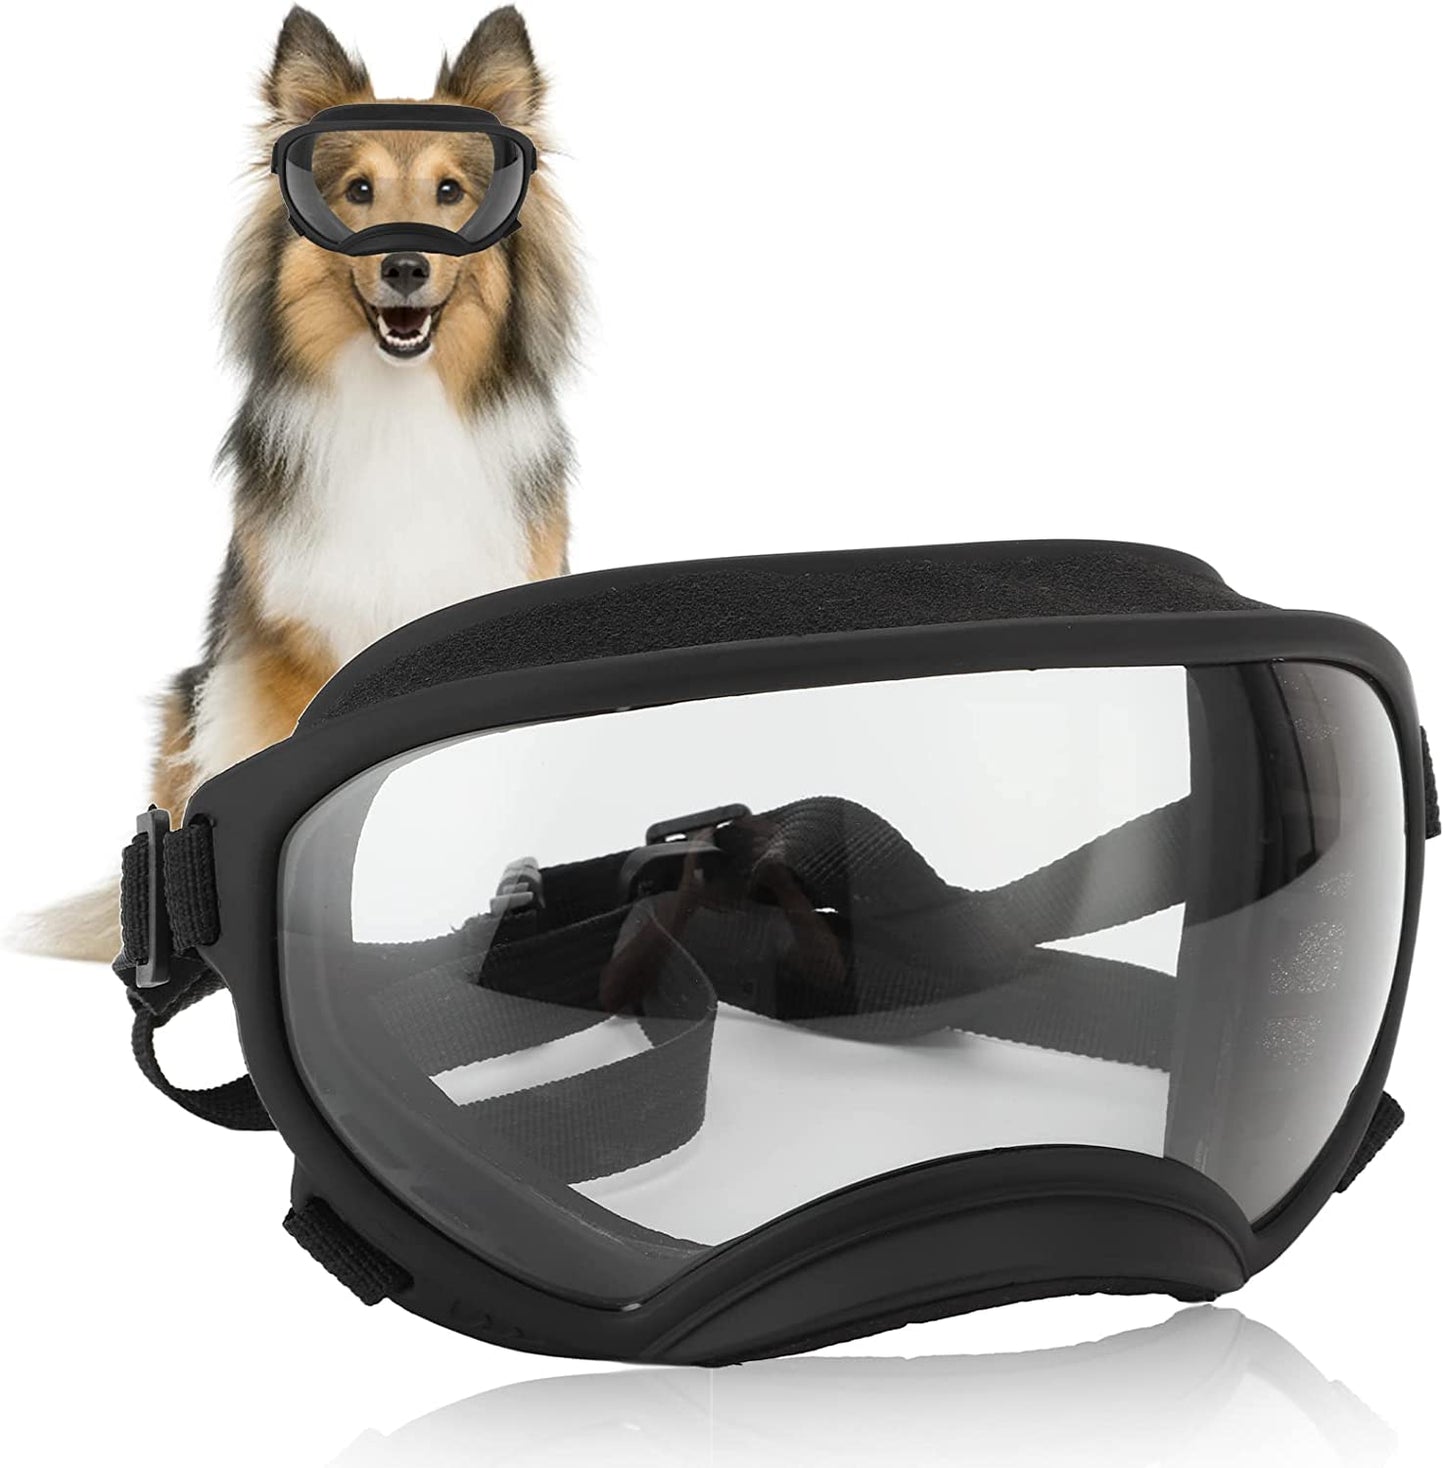 Teamsky Dog Sunglasses Dog Goggles, UV Protection Wind Protection Dust Protection Pet Glasses Eye Wear Protection with Adjustable Strap, for Dog Animals & Pet Supplies > Pet Supplies > Dog Supplies > Dog Apparel Teamsky TRANSPARENT BLACK FRAME  